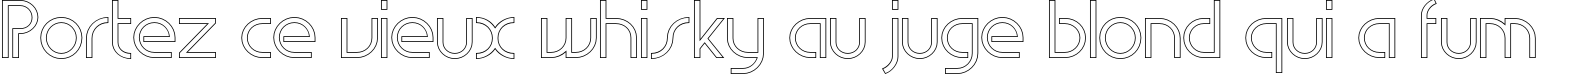 Пример написания шрифтом EdgeLineOutline текста на французском